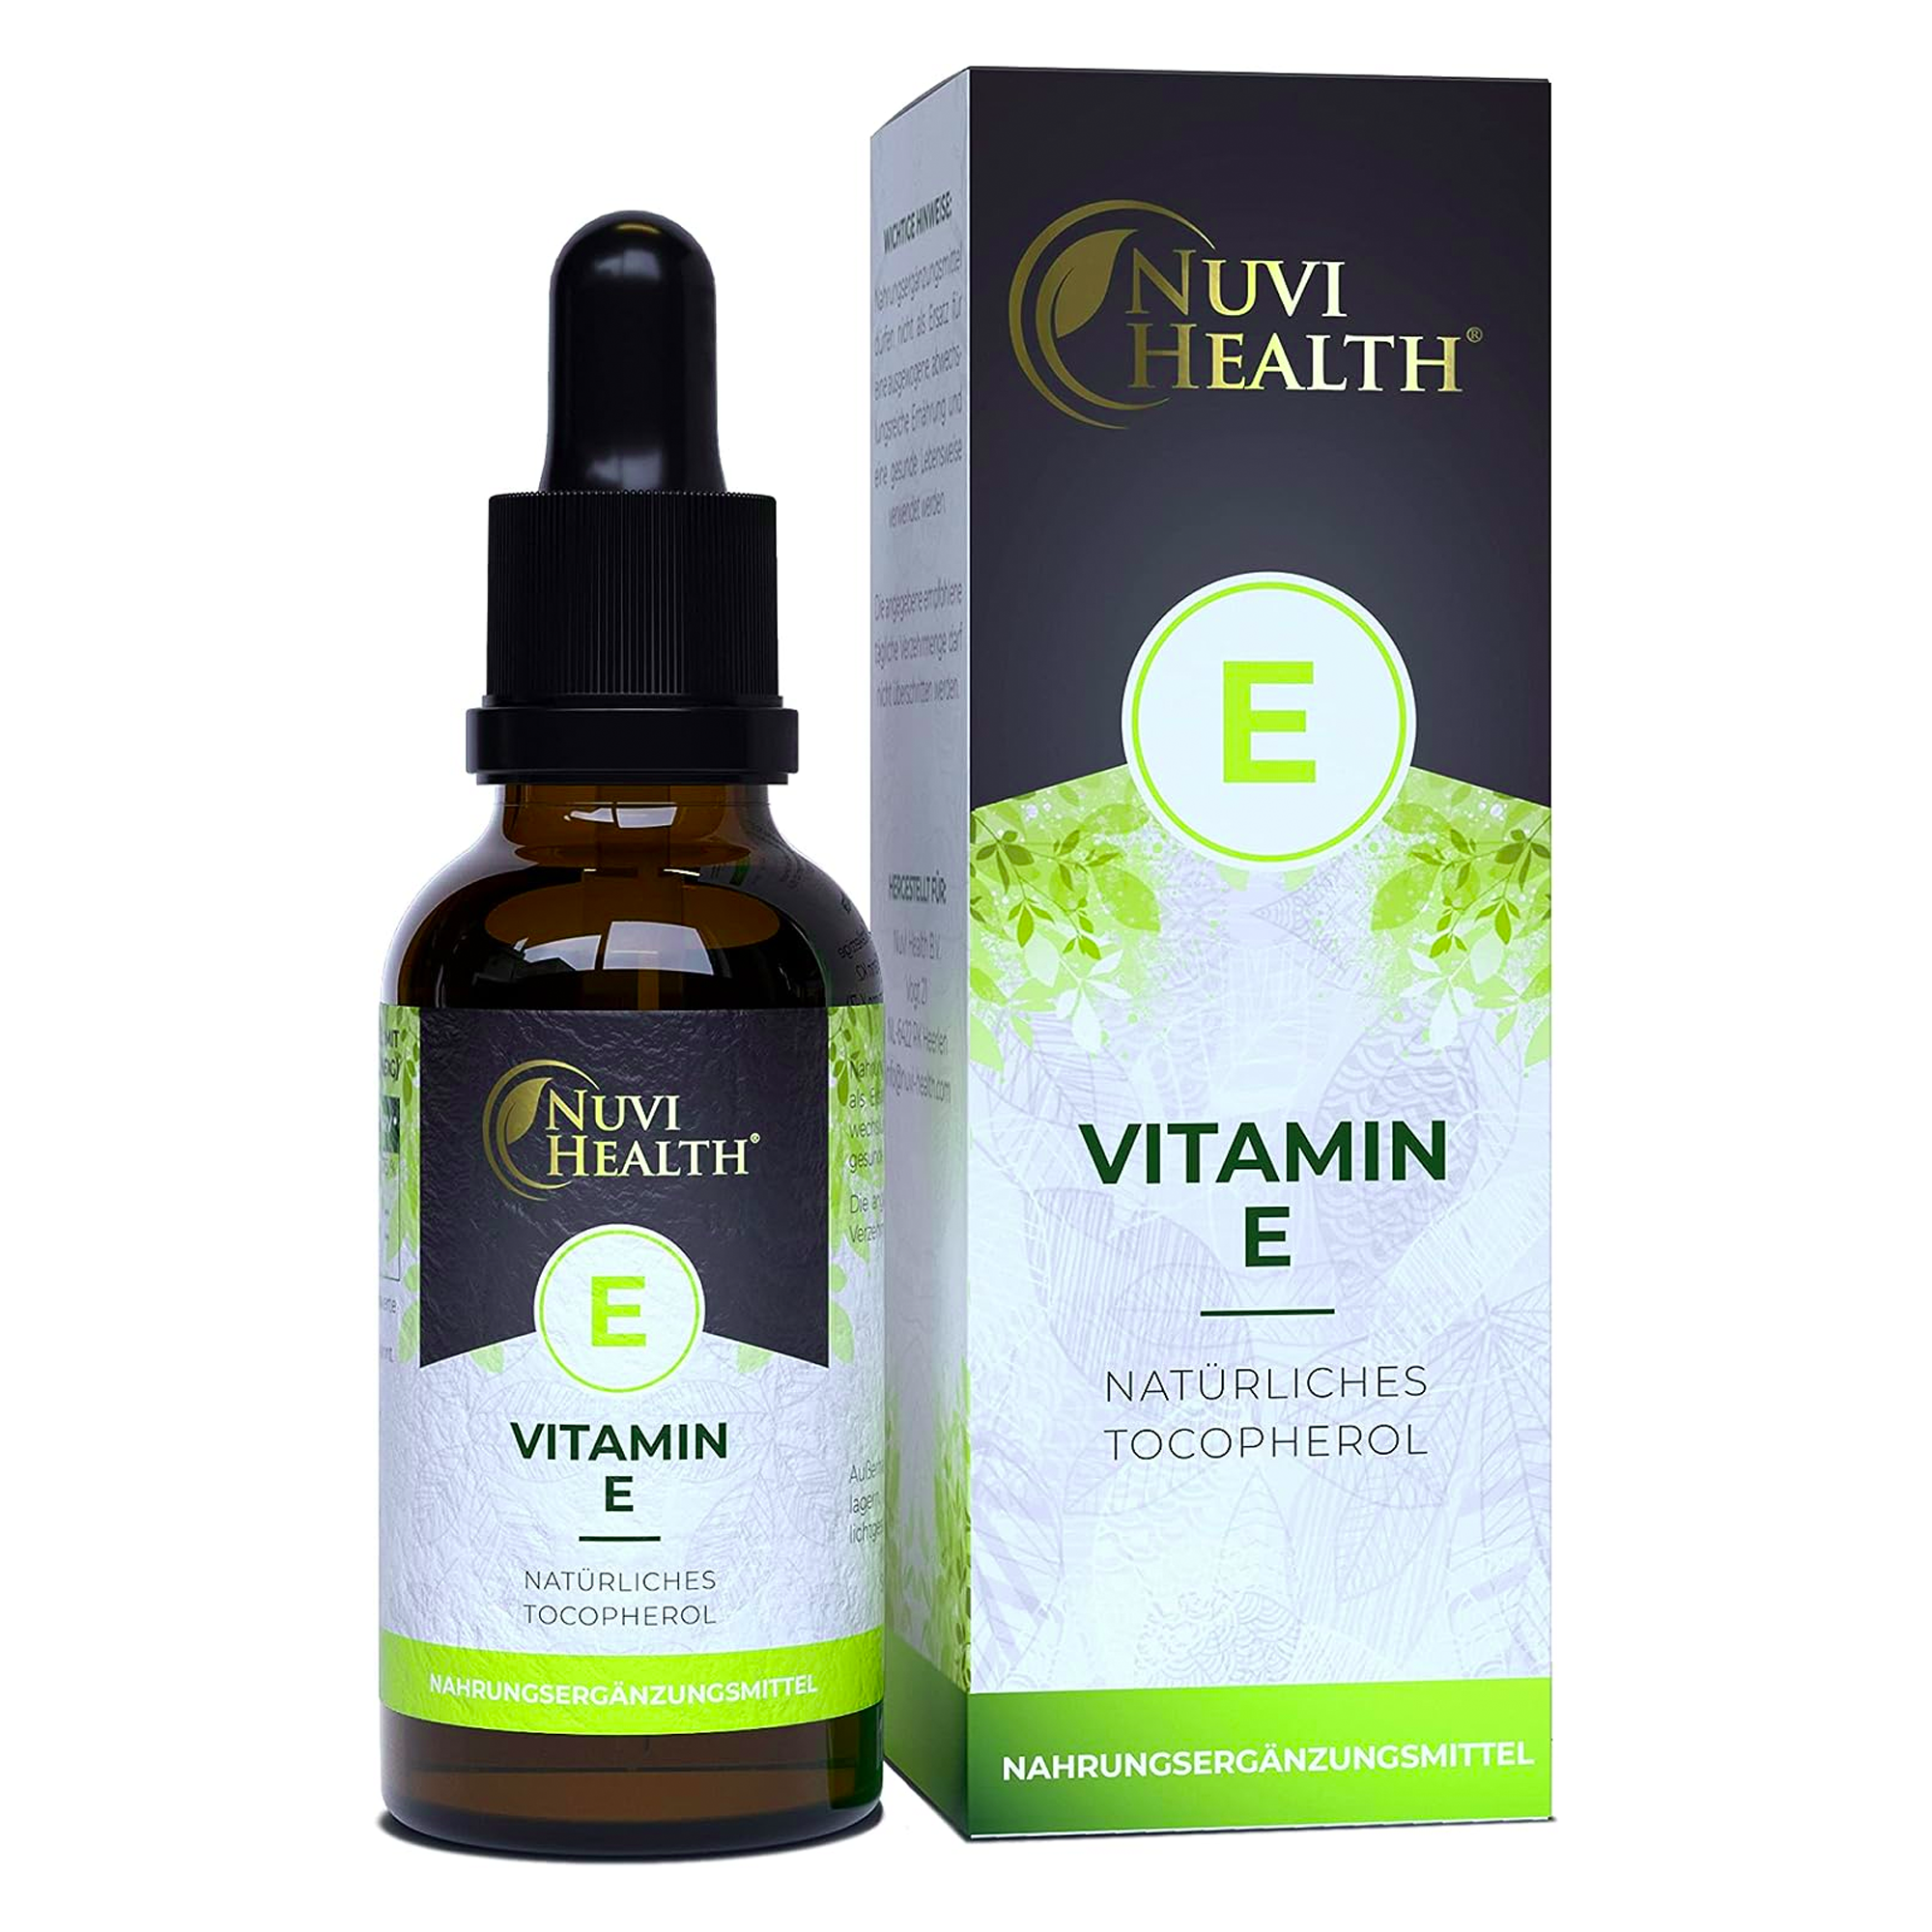 Vitamine E | 100 IE - XL Flacon -> 50 ML = 500 druppels | Natuurlijke bioactieve D-alpha-tocoferol uit zonnebloempitten | Hooggedoseerd | Veganistisch | Nuvi Health